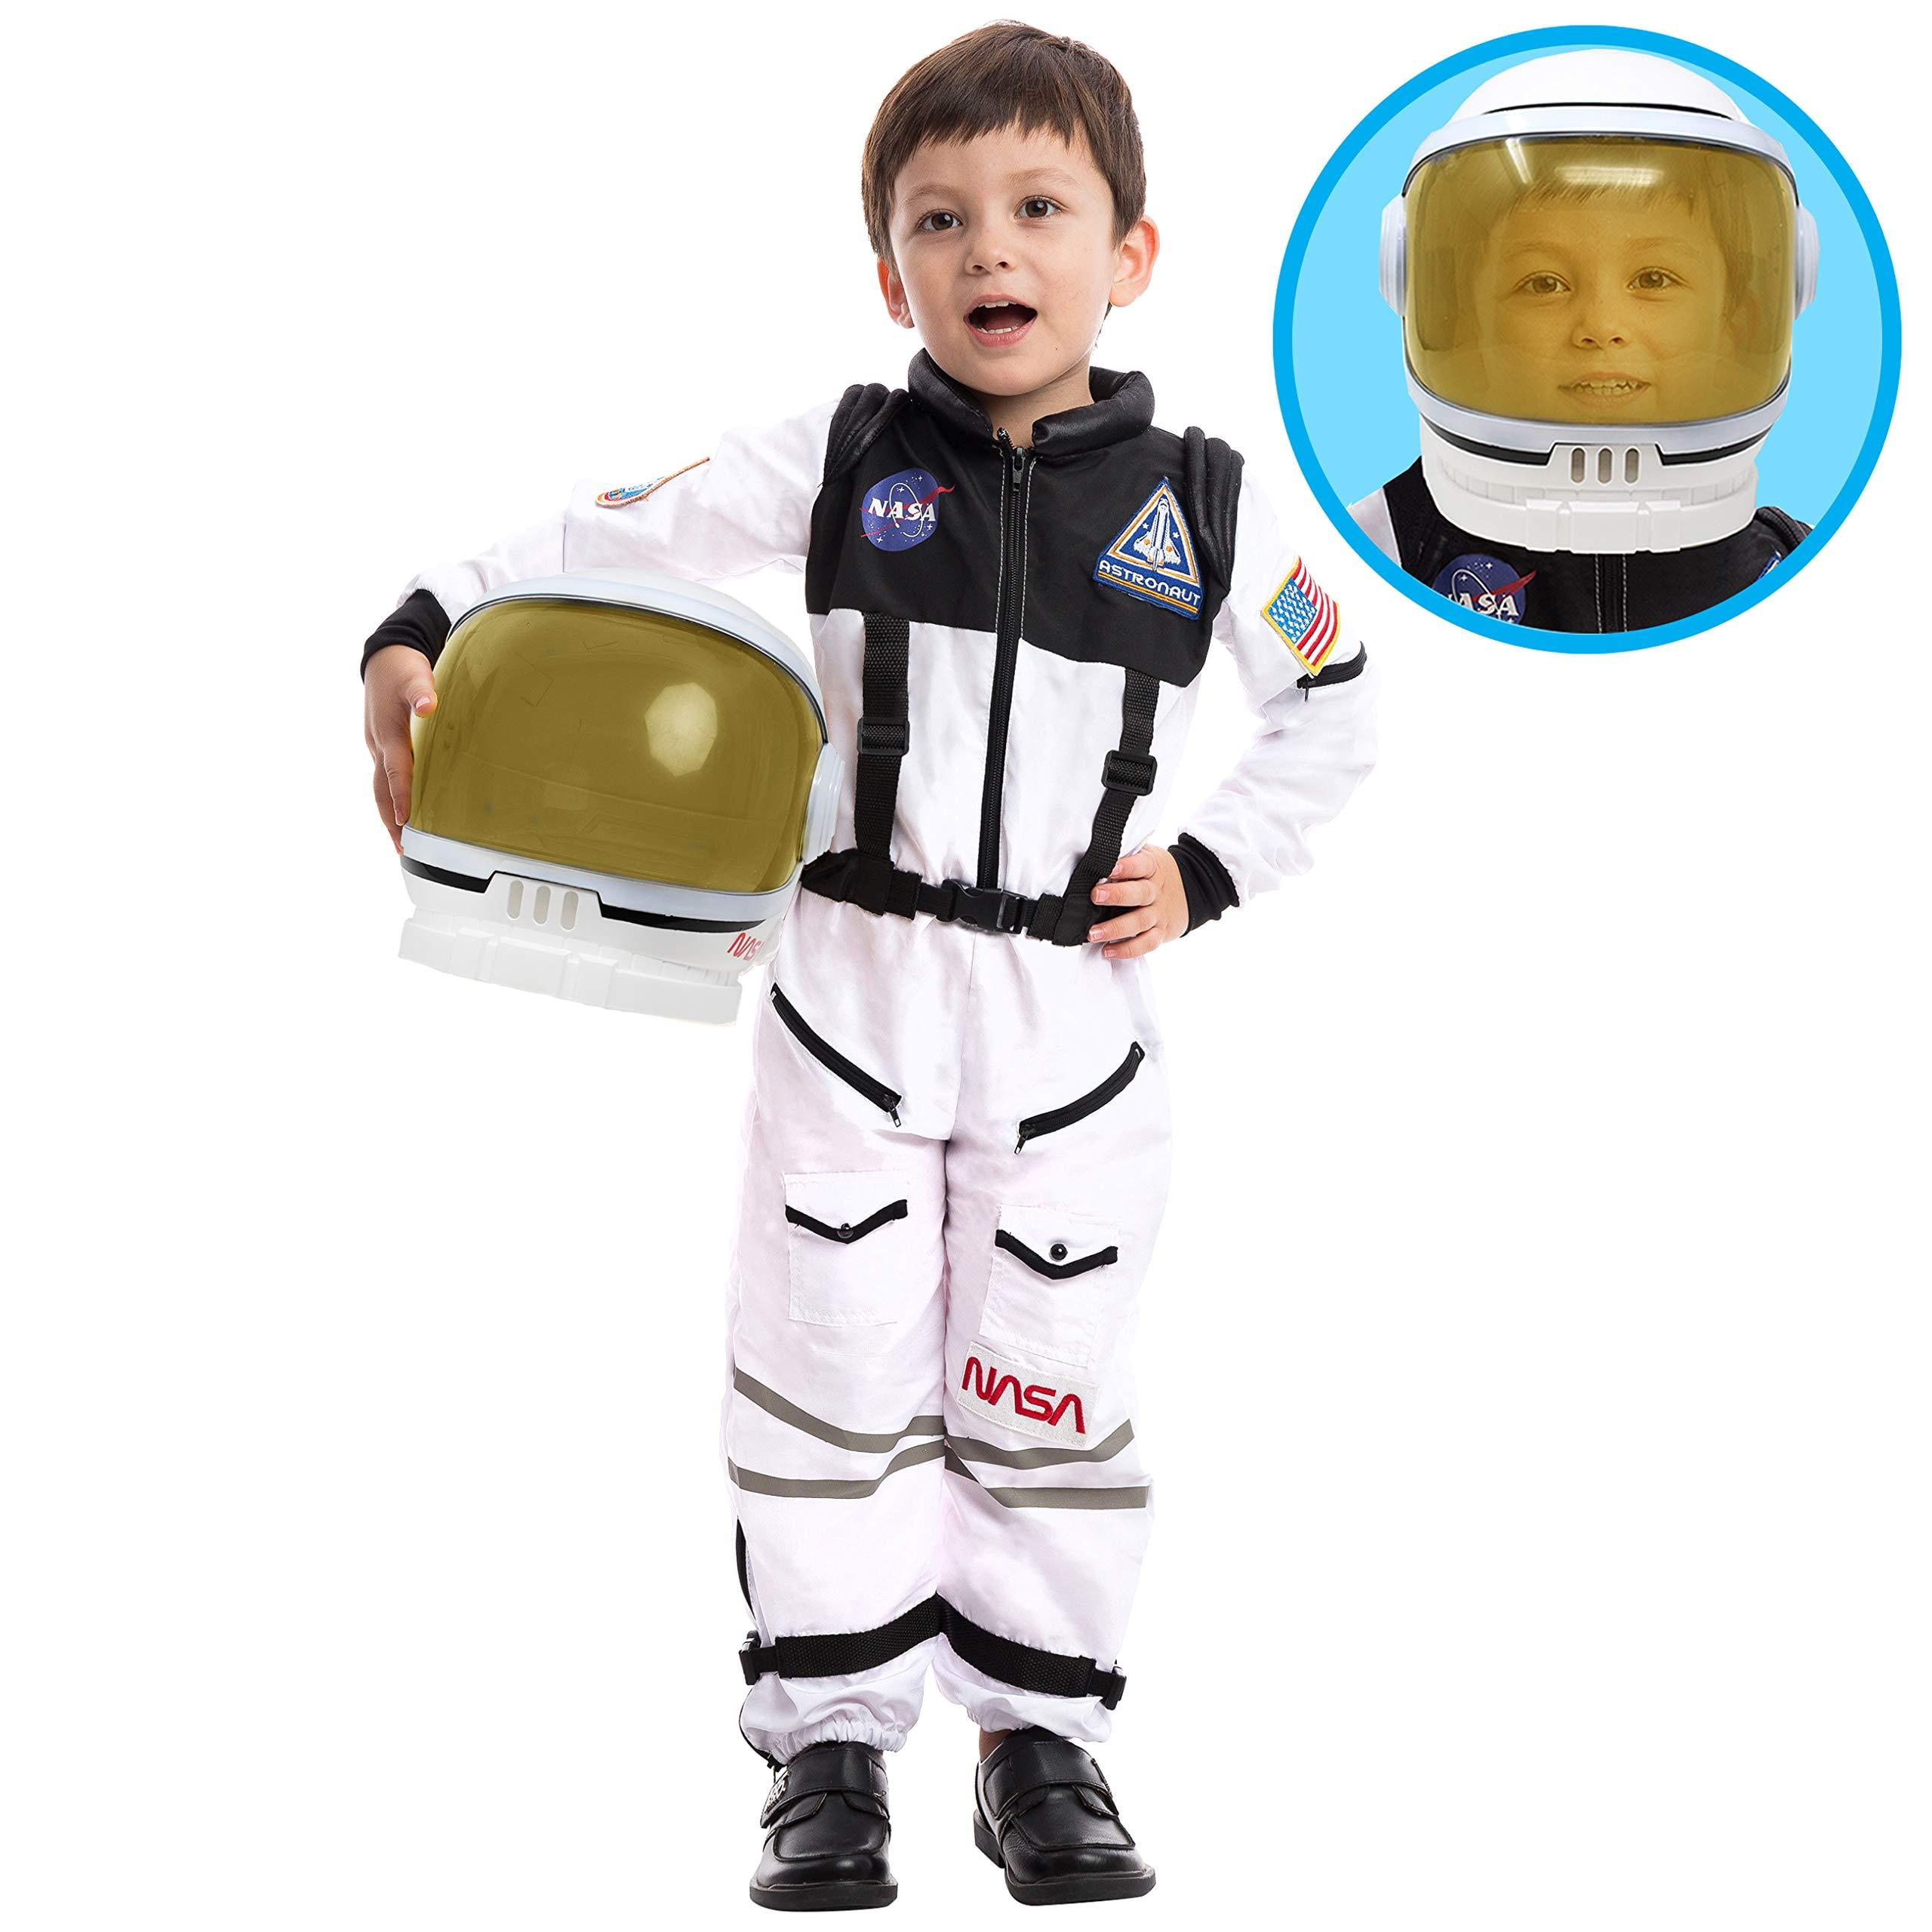 Astronaut Nasa Pilot Costume With Movable Visor Helmet For Kids Medium Walmart Com Walmart Com